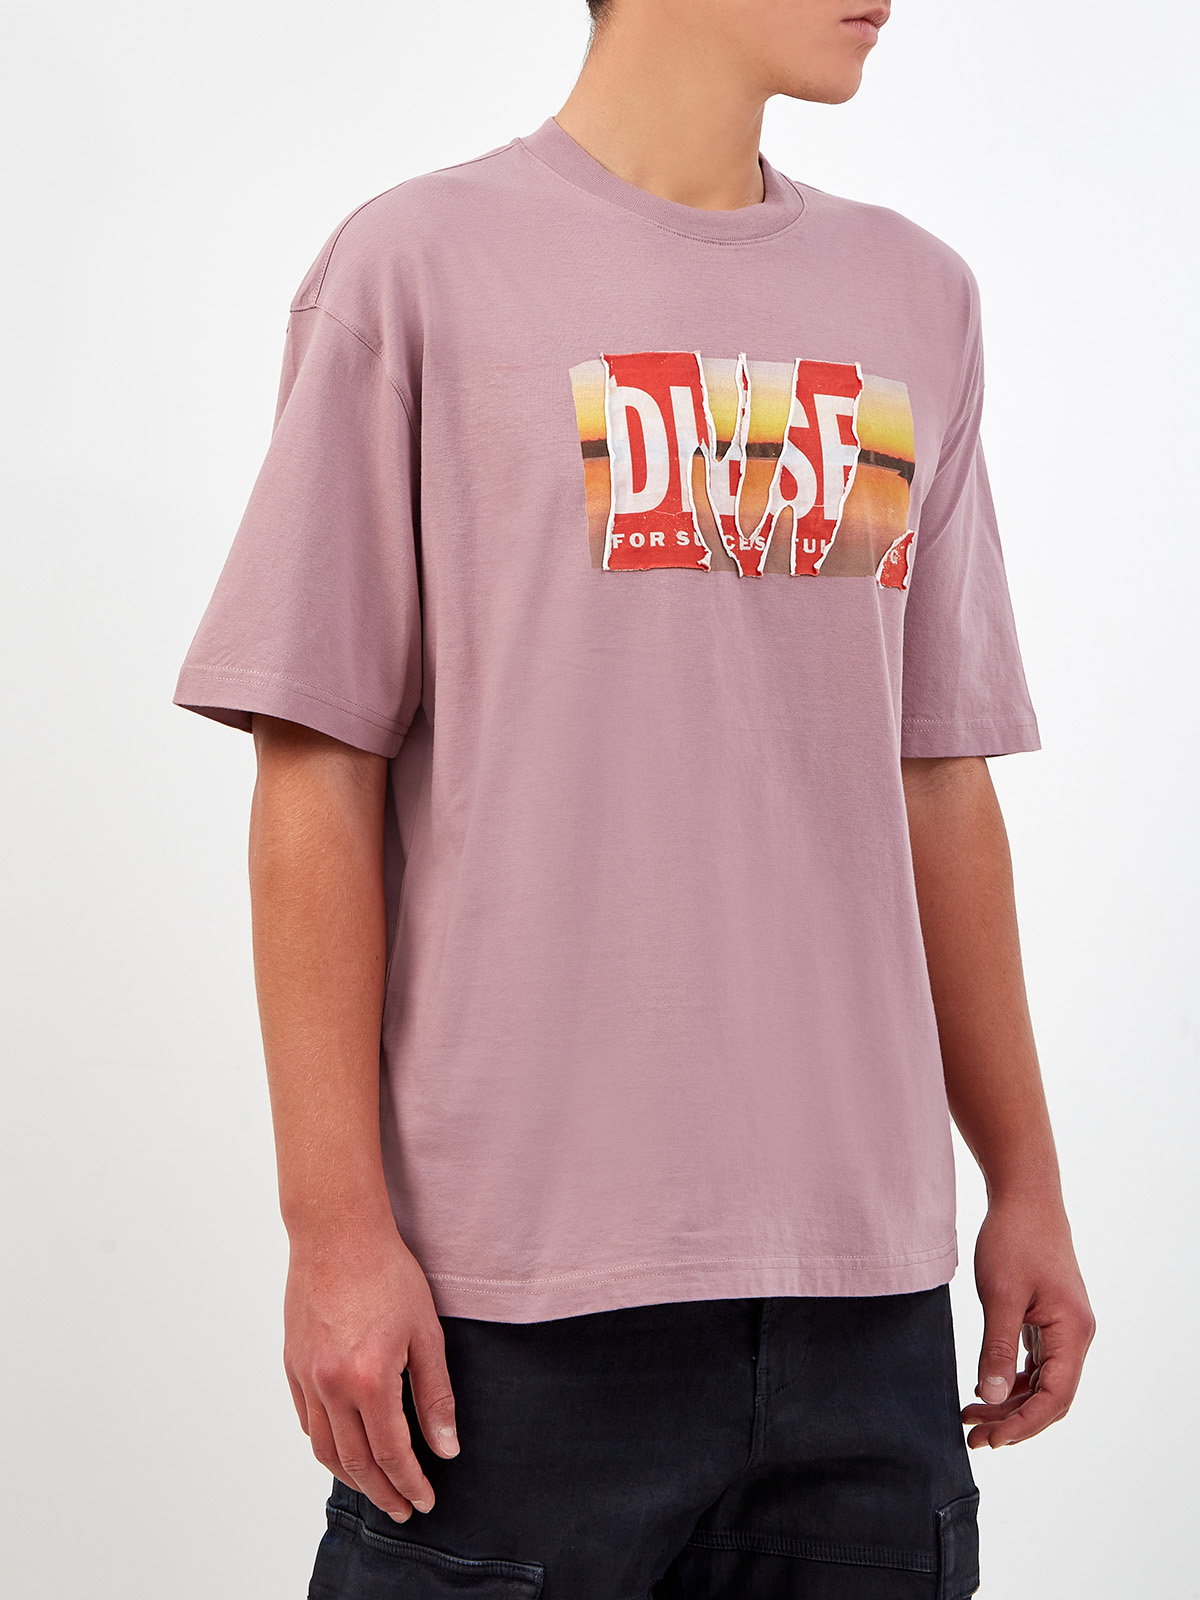 Свободная футболка T-Wash из хлопка с двойным принтом DIESEL, цвет розовый, размер XS;S;M;L;XL;2XL - фото 3